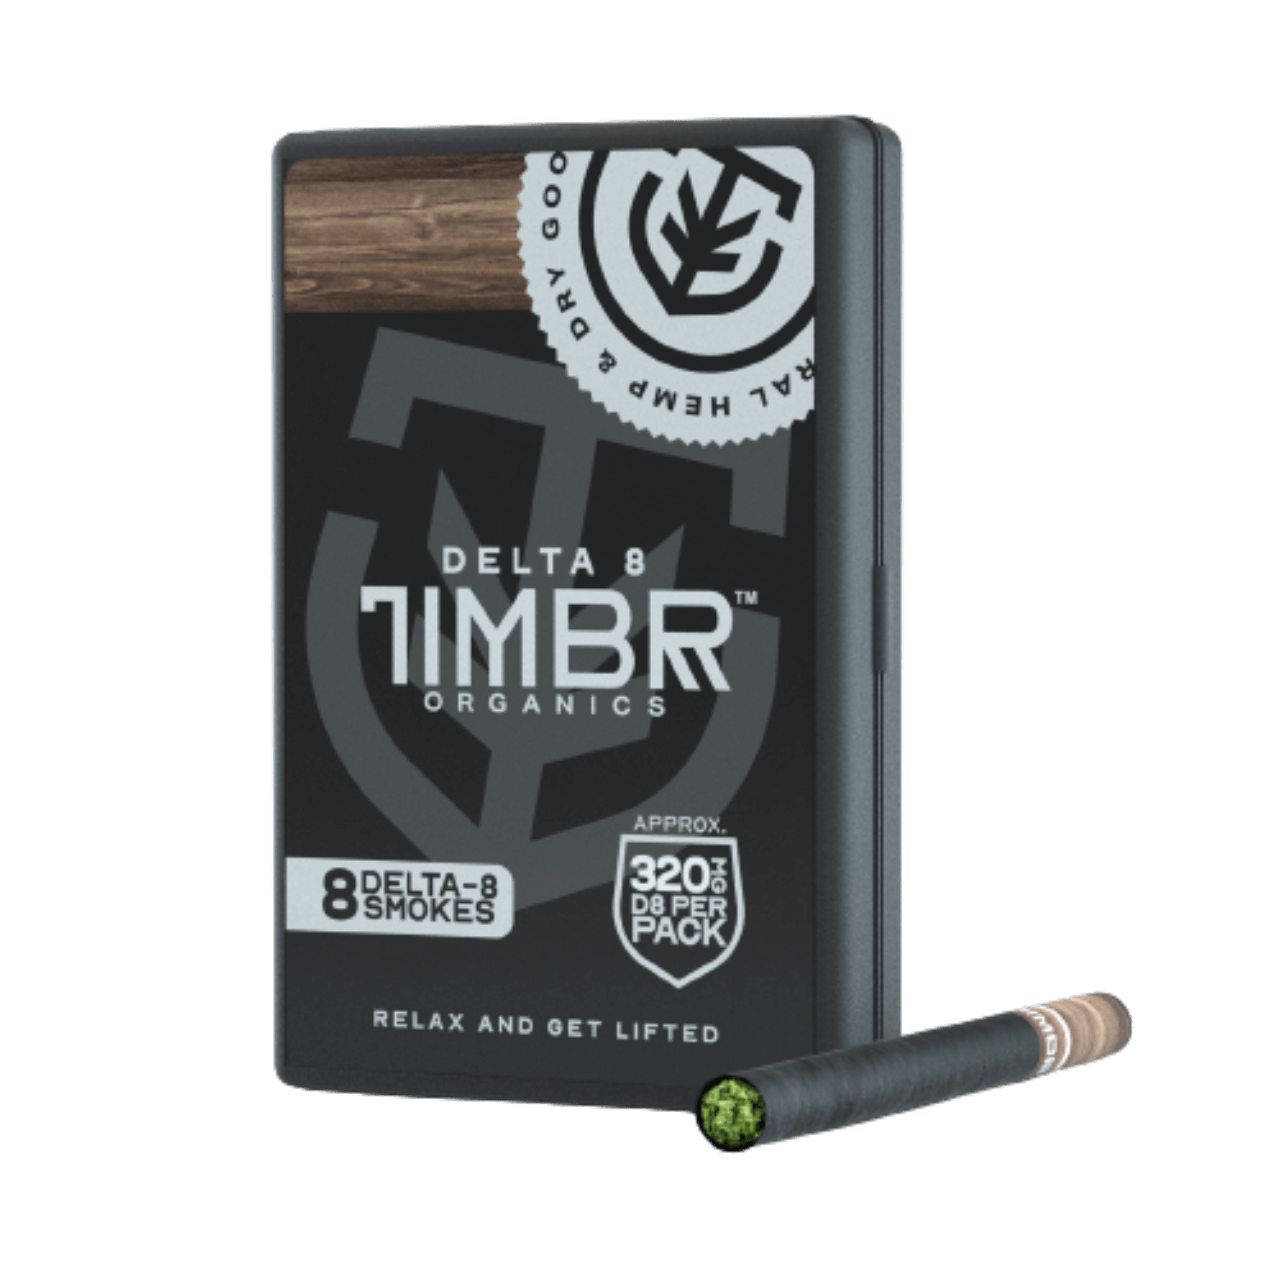 TIMBR Organics Delta 8 Filter 320MG Cigarettes